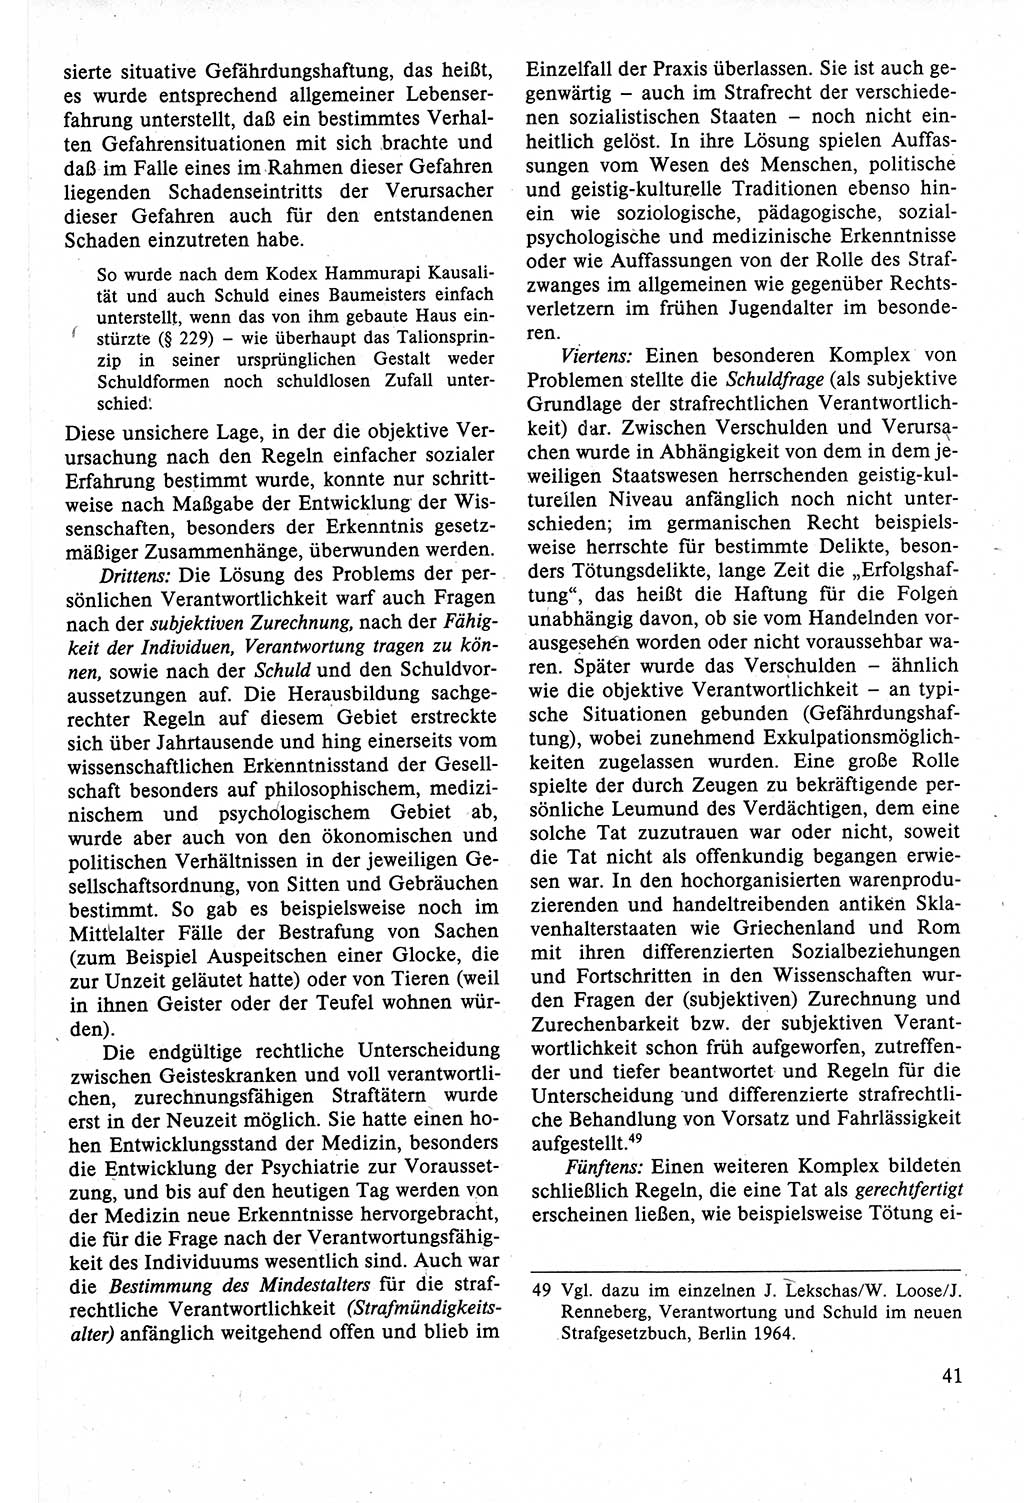 Strafrecht der DDR (Deutsche Demokratische Republik), Lehrbuch 1988, Seite 41 (Strafr. DDR Lb. 1988, S. 41)